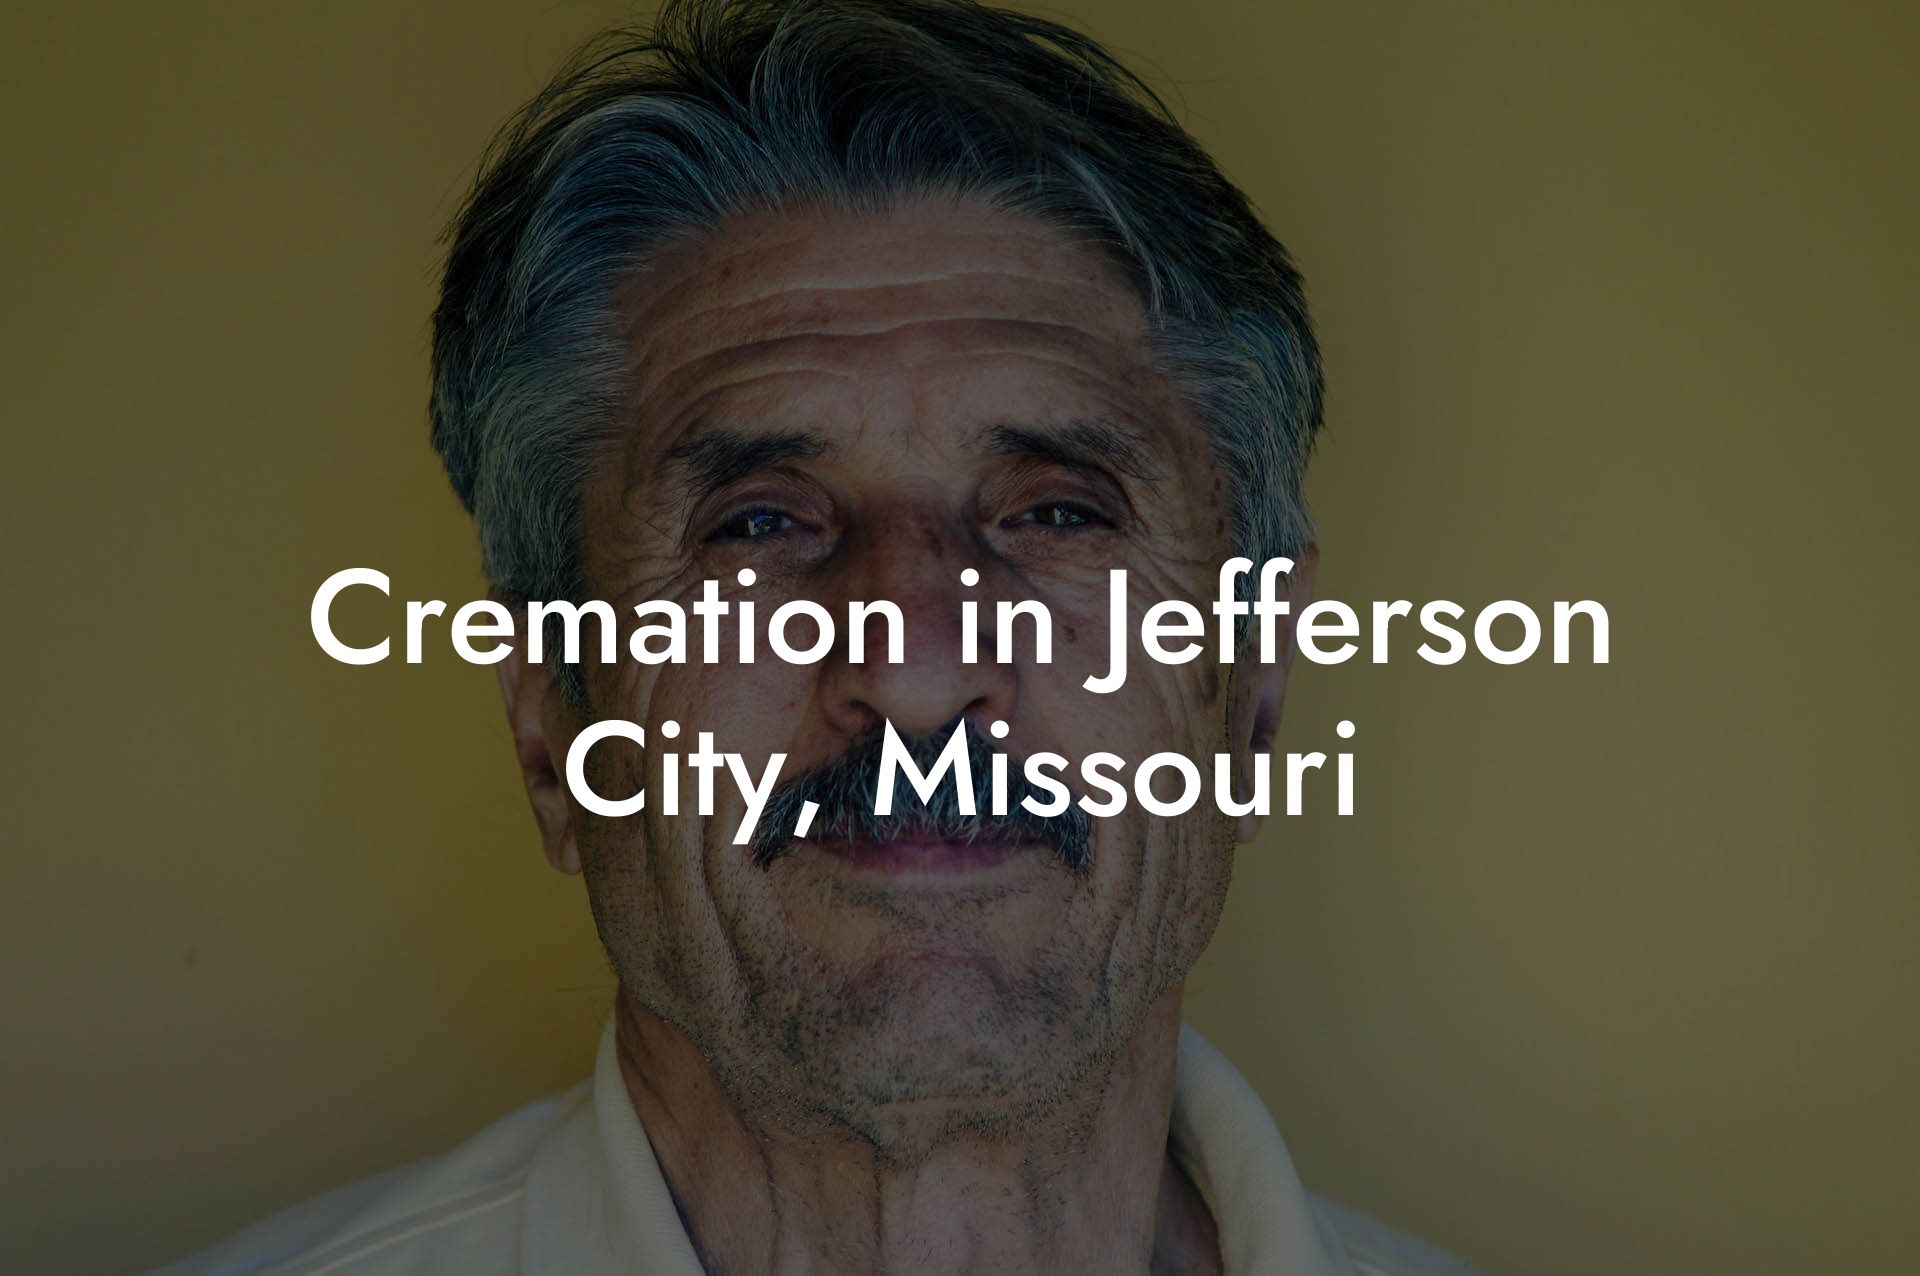 Cremation in Jefferson City, Missouri